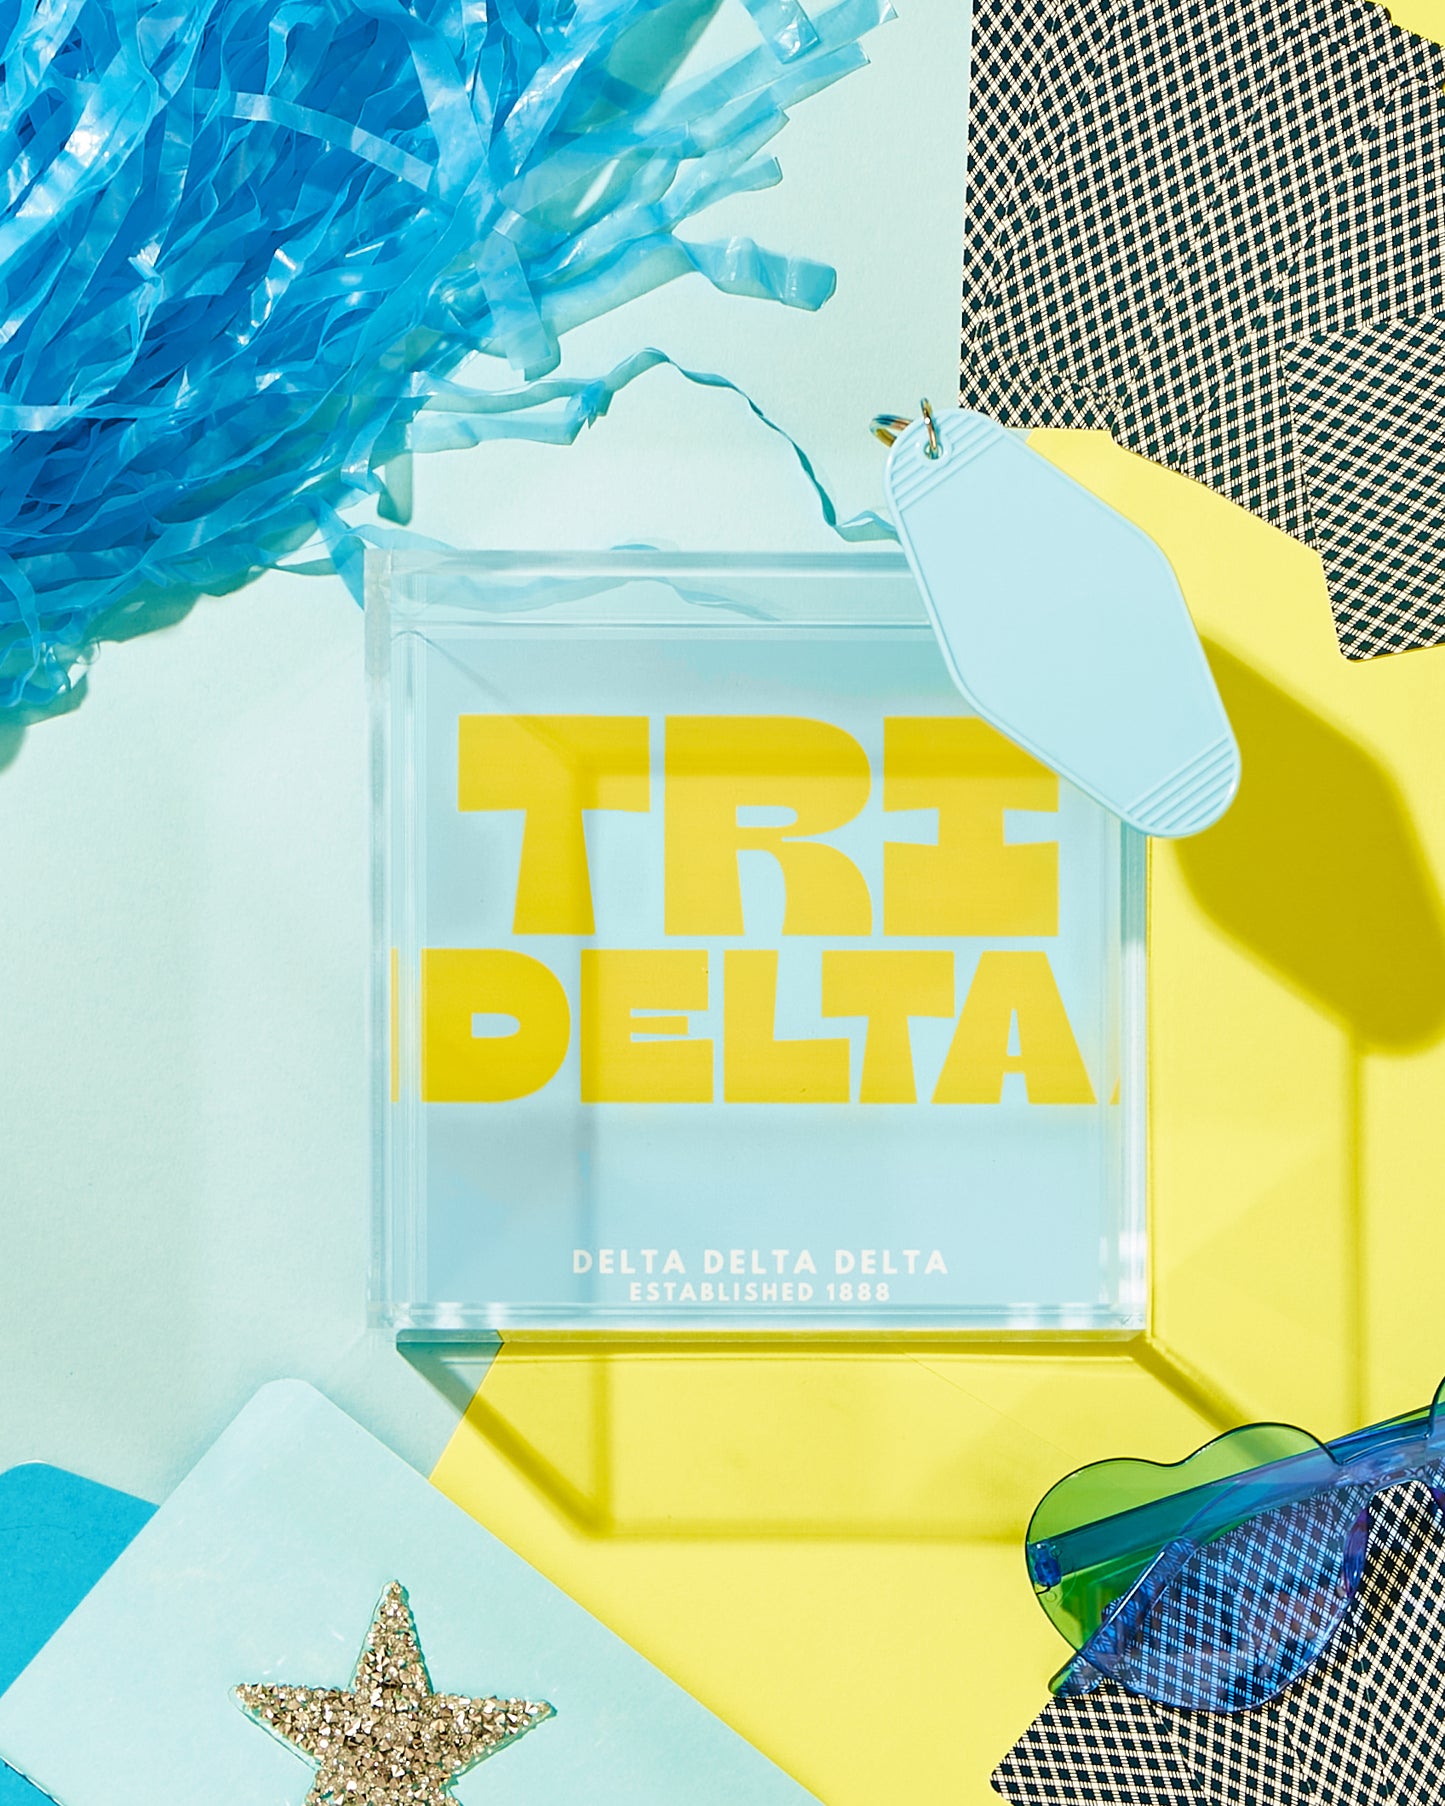 Delta Delta Delta Trinket Tray